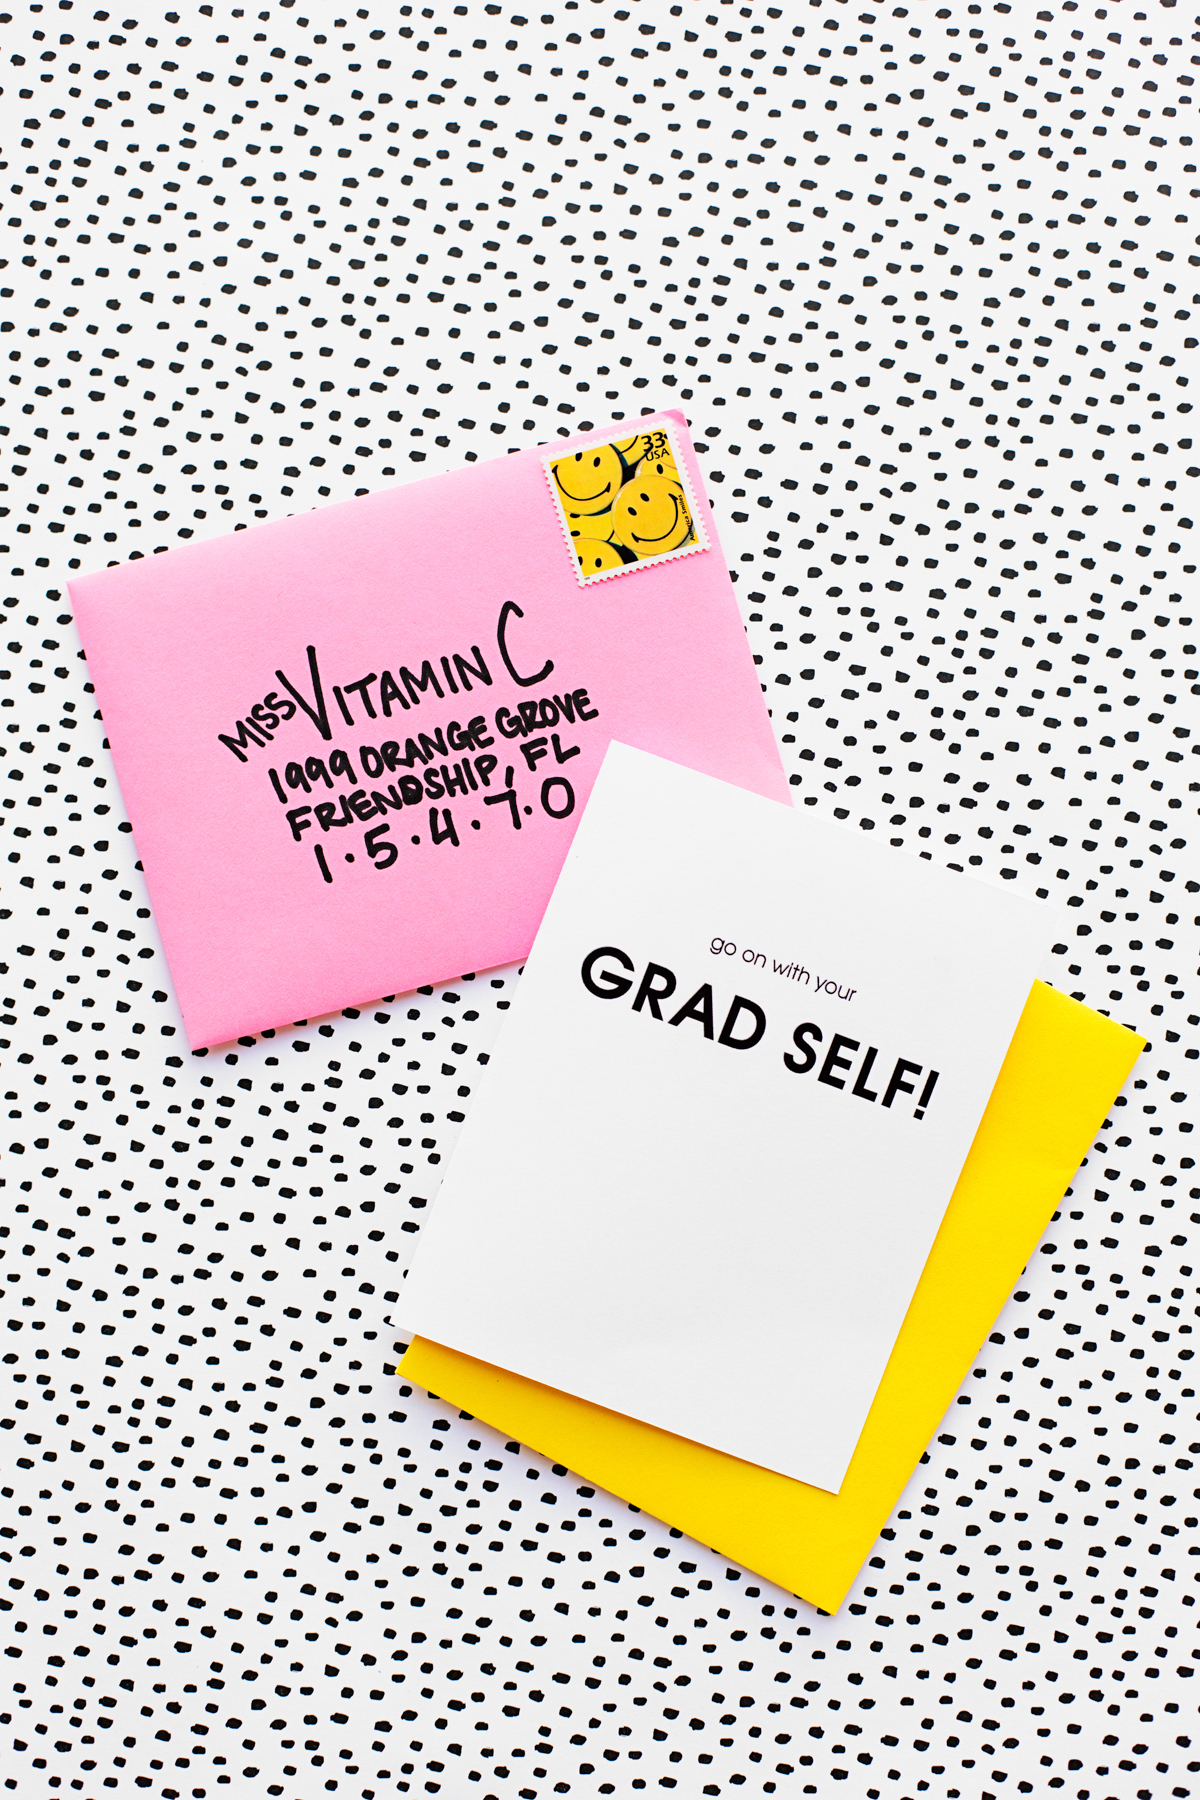 Welcome To Adulthood: Free Printable Graduation Cards - Studio Diy - Free Printable Graduation Cards